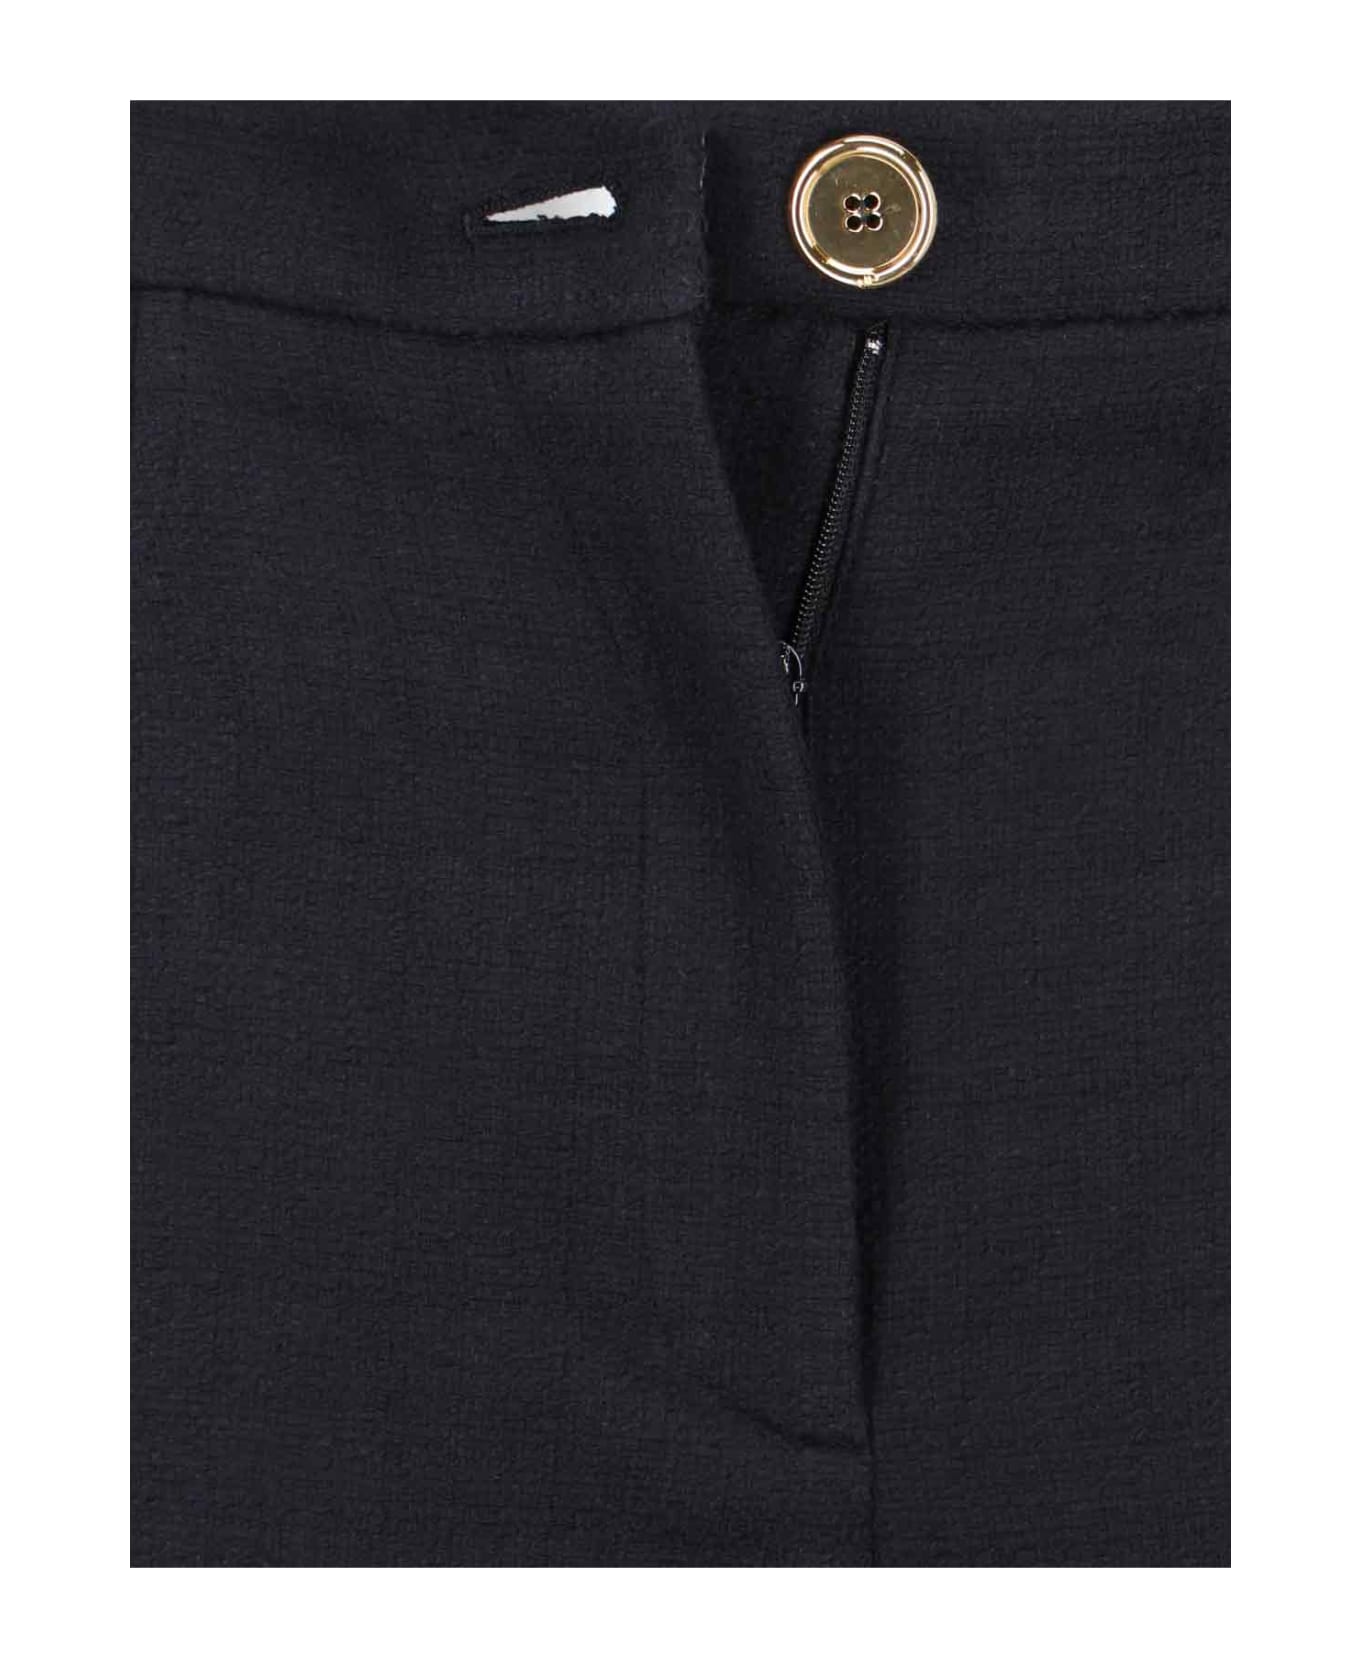 Patou Gold Button Trousers - Black  